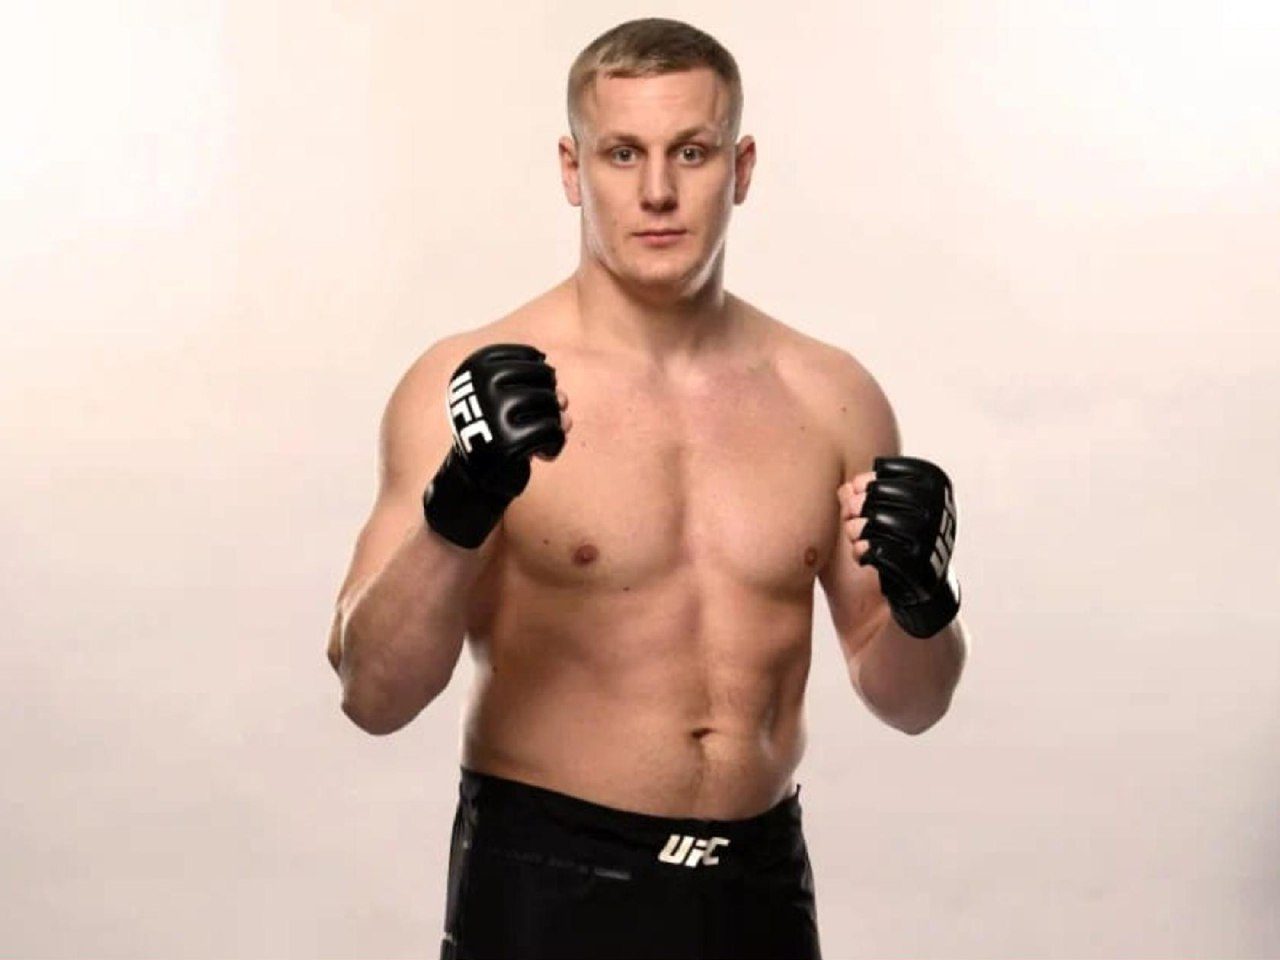 Павлович вышел на третье место в рейтинге тяжеловесов UFC